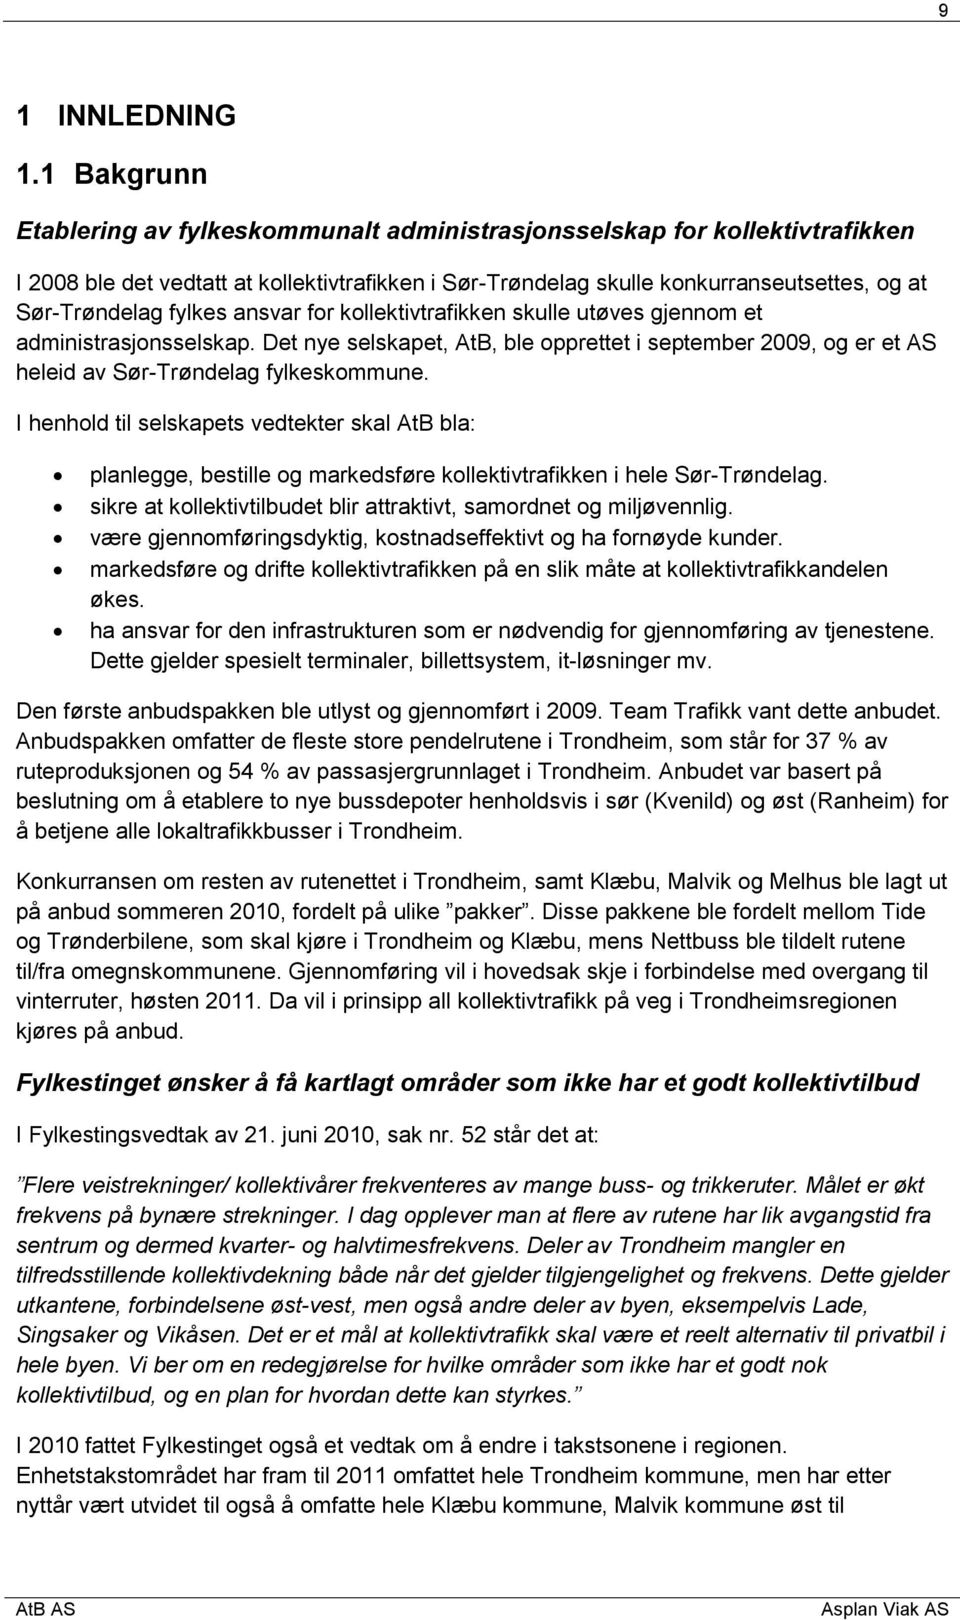 fylkes ansvar for kollektivtrafikken skulle utøves gjennom et administrasjonsselskap. Det nye selskapet, AtB, ble opprettet i september 2009, og er et AS heleid av Sør-Trøndelag fylkeskommune.